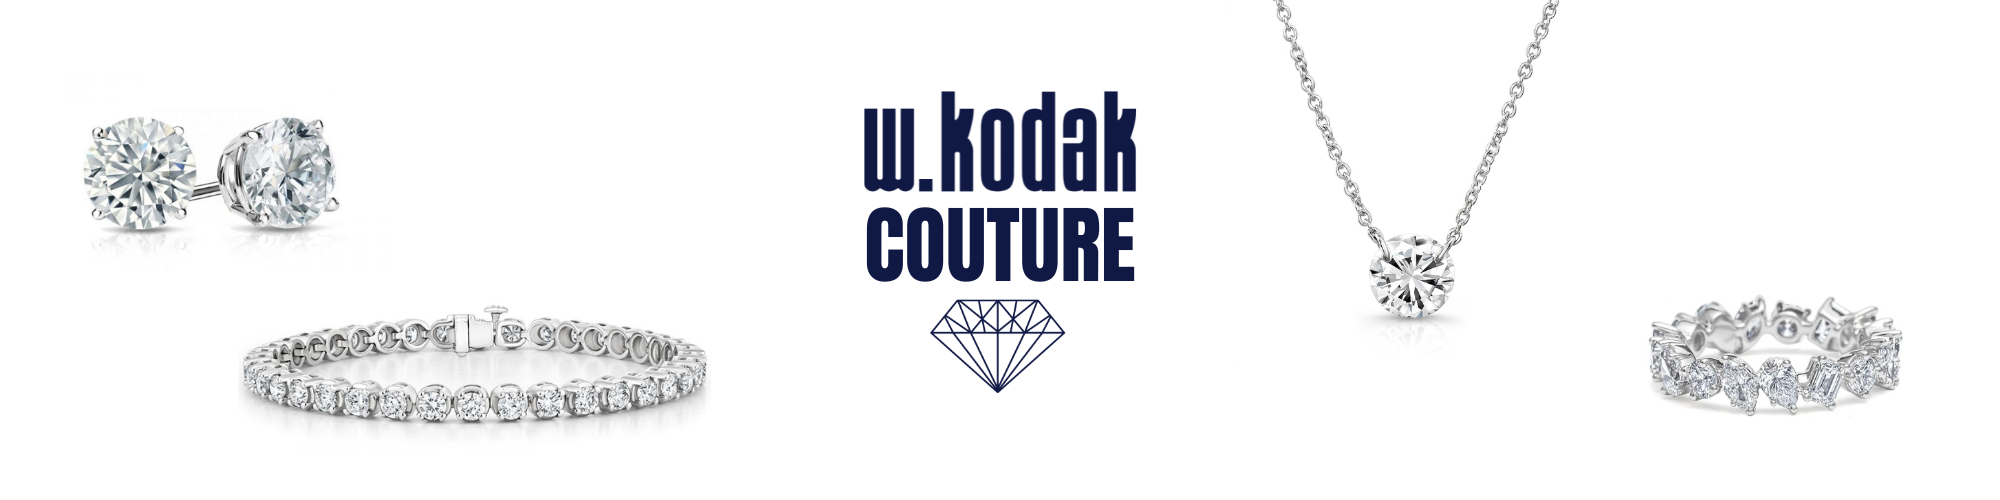 W. Kodak Couture